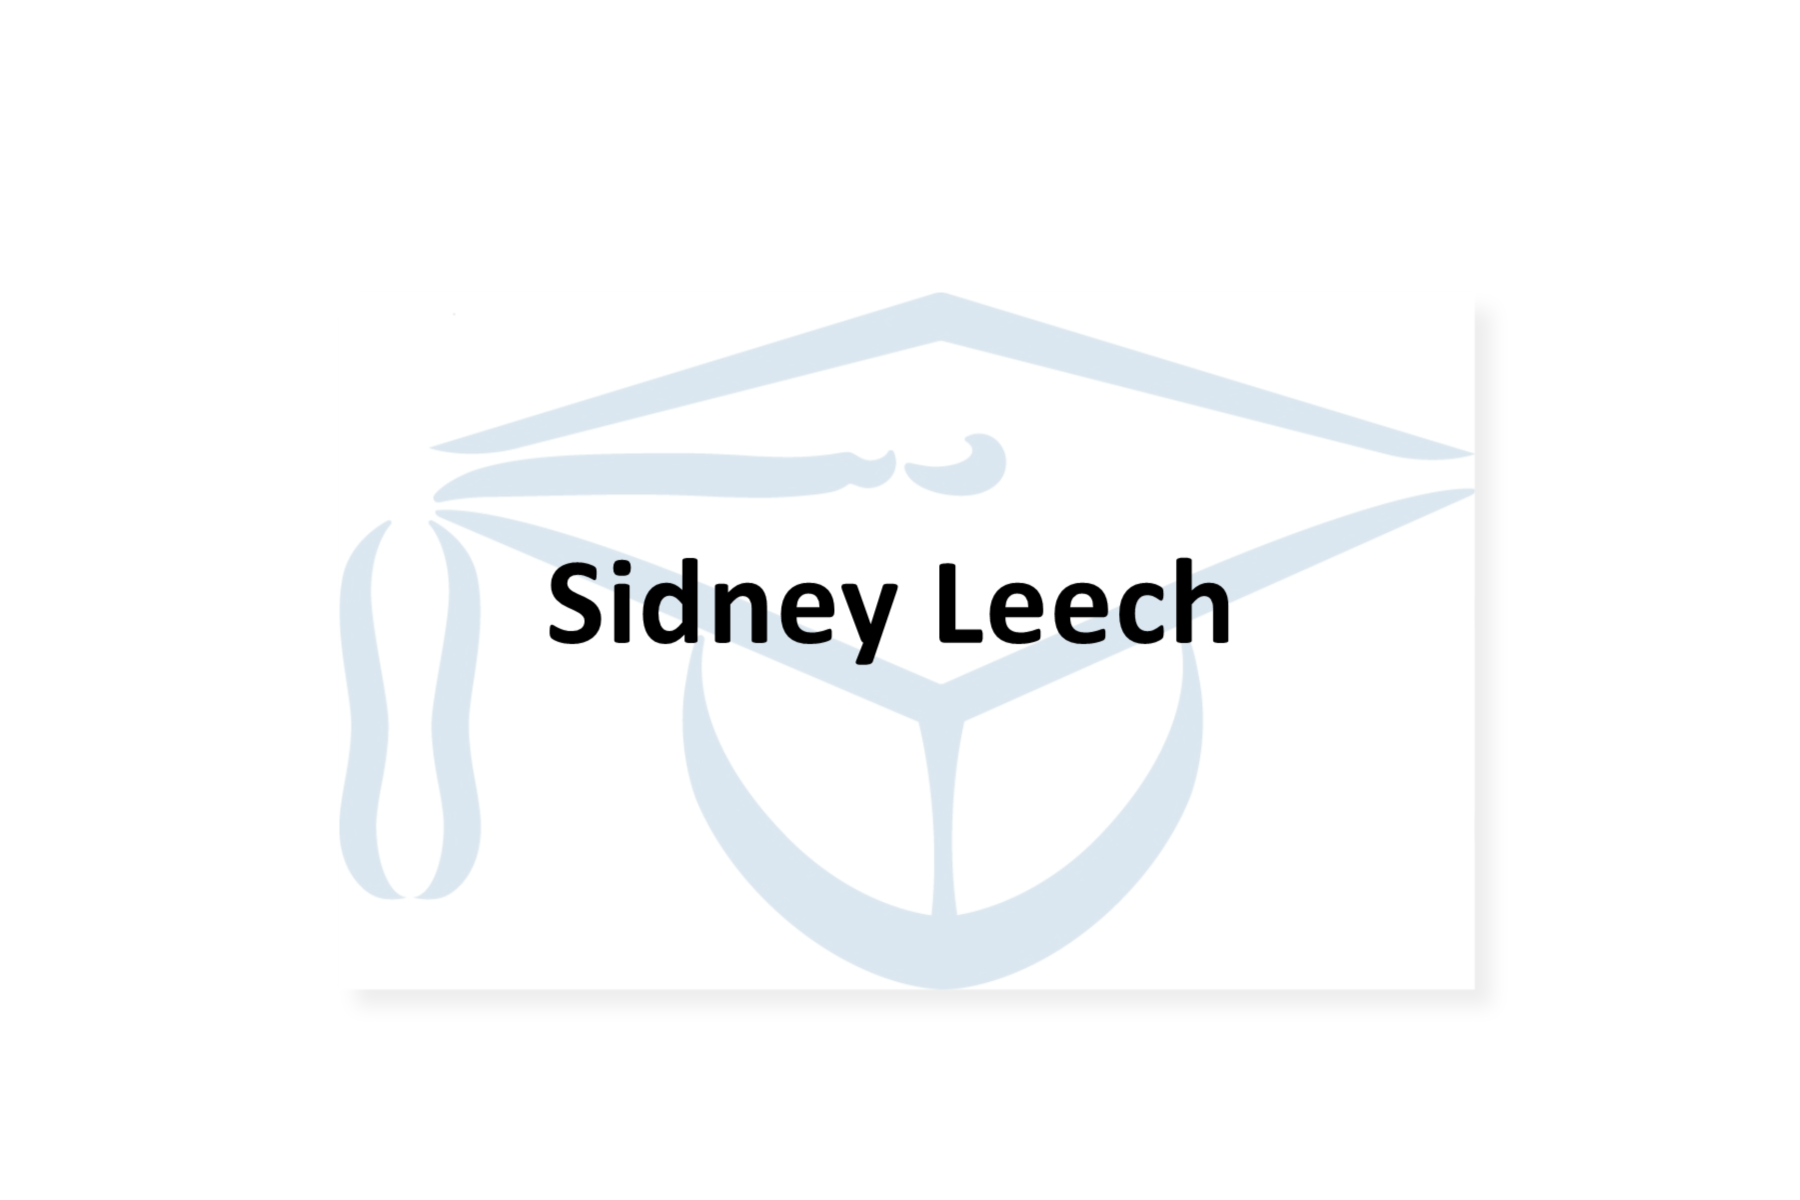 Sidney Leech